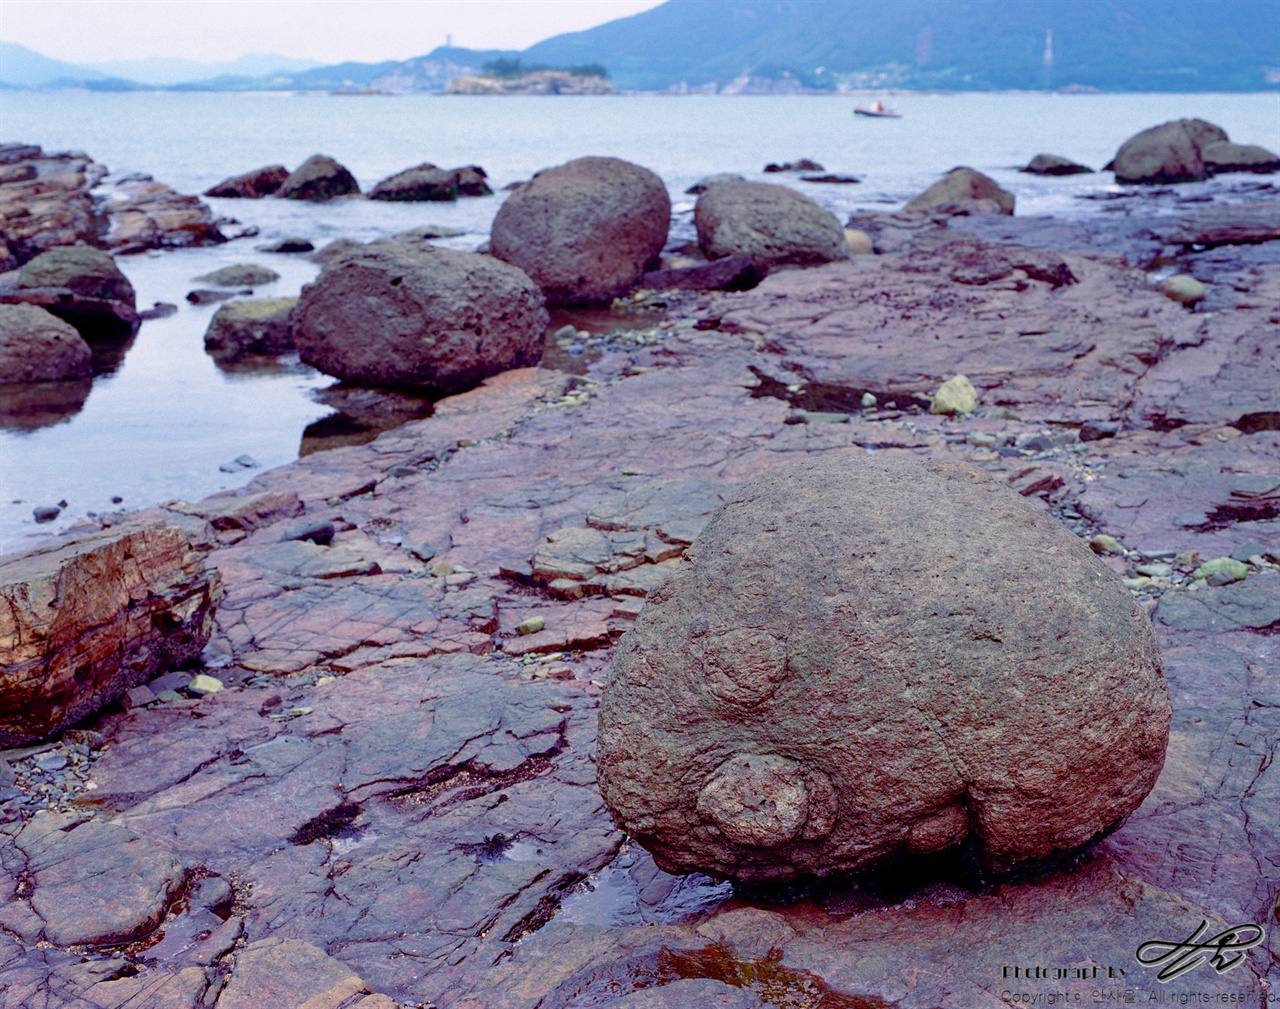 공룡 발자국이 워낙 많은 섬이니, 이런 돌들이 마치 공룡의 알처럼 느껴지기도 한다.